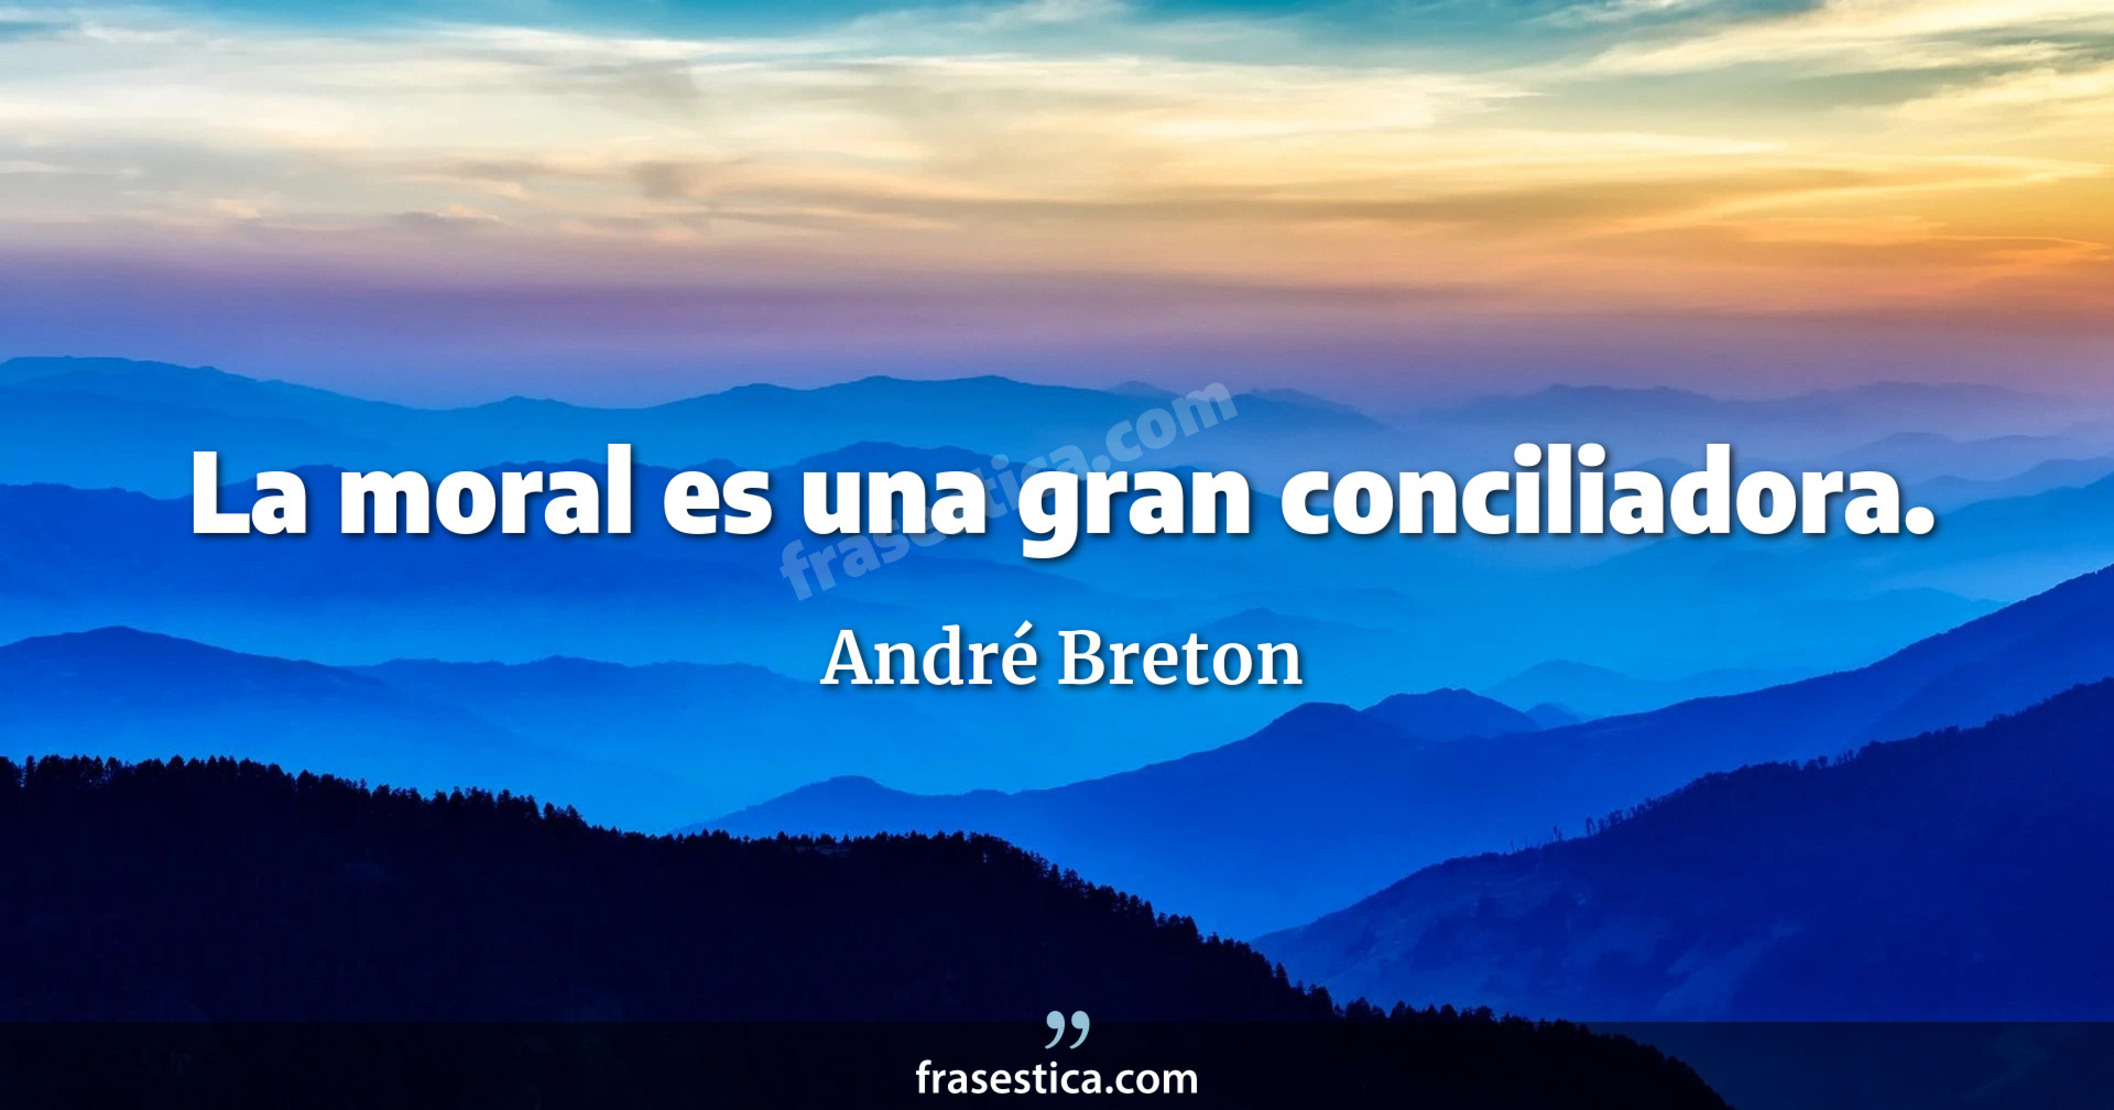 La moral es una gran conciliadora. - André Breton